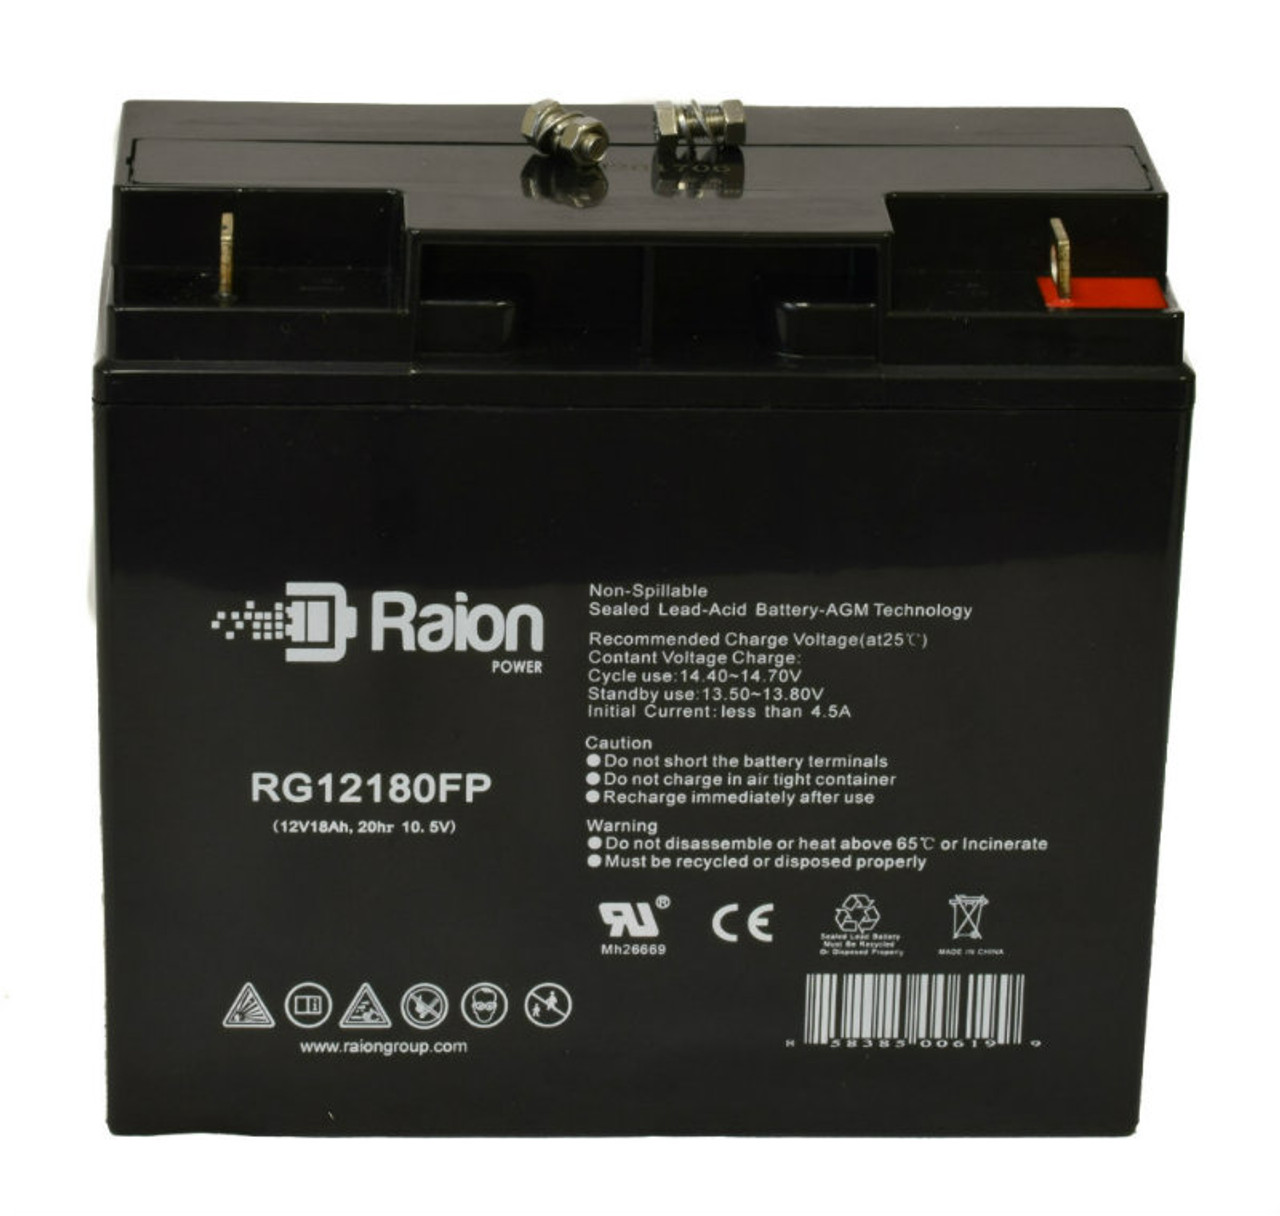 Raion Power RG12180FP 12V 18Ah Lead Acid Battery for POWERGOR SB12-15